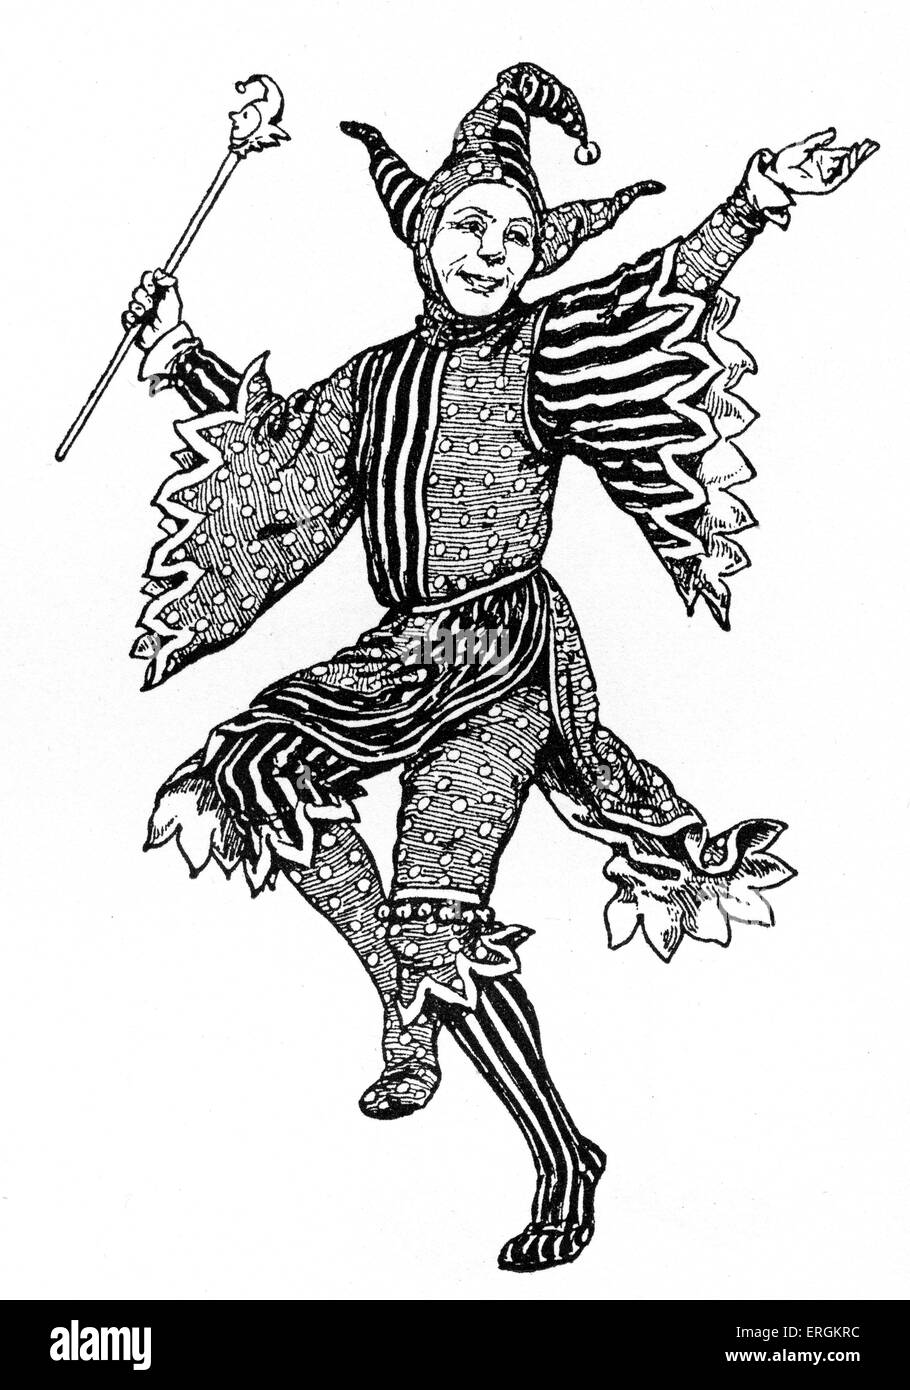 Exemple du costume d'un 'patch' - un nom appliqué à une branche sot dans la période tudor au 16ème siècle la Grande-Bretagne.Après Banque D'Images